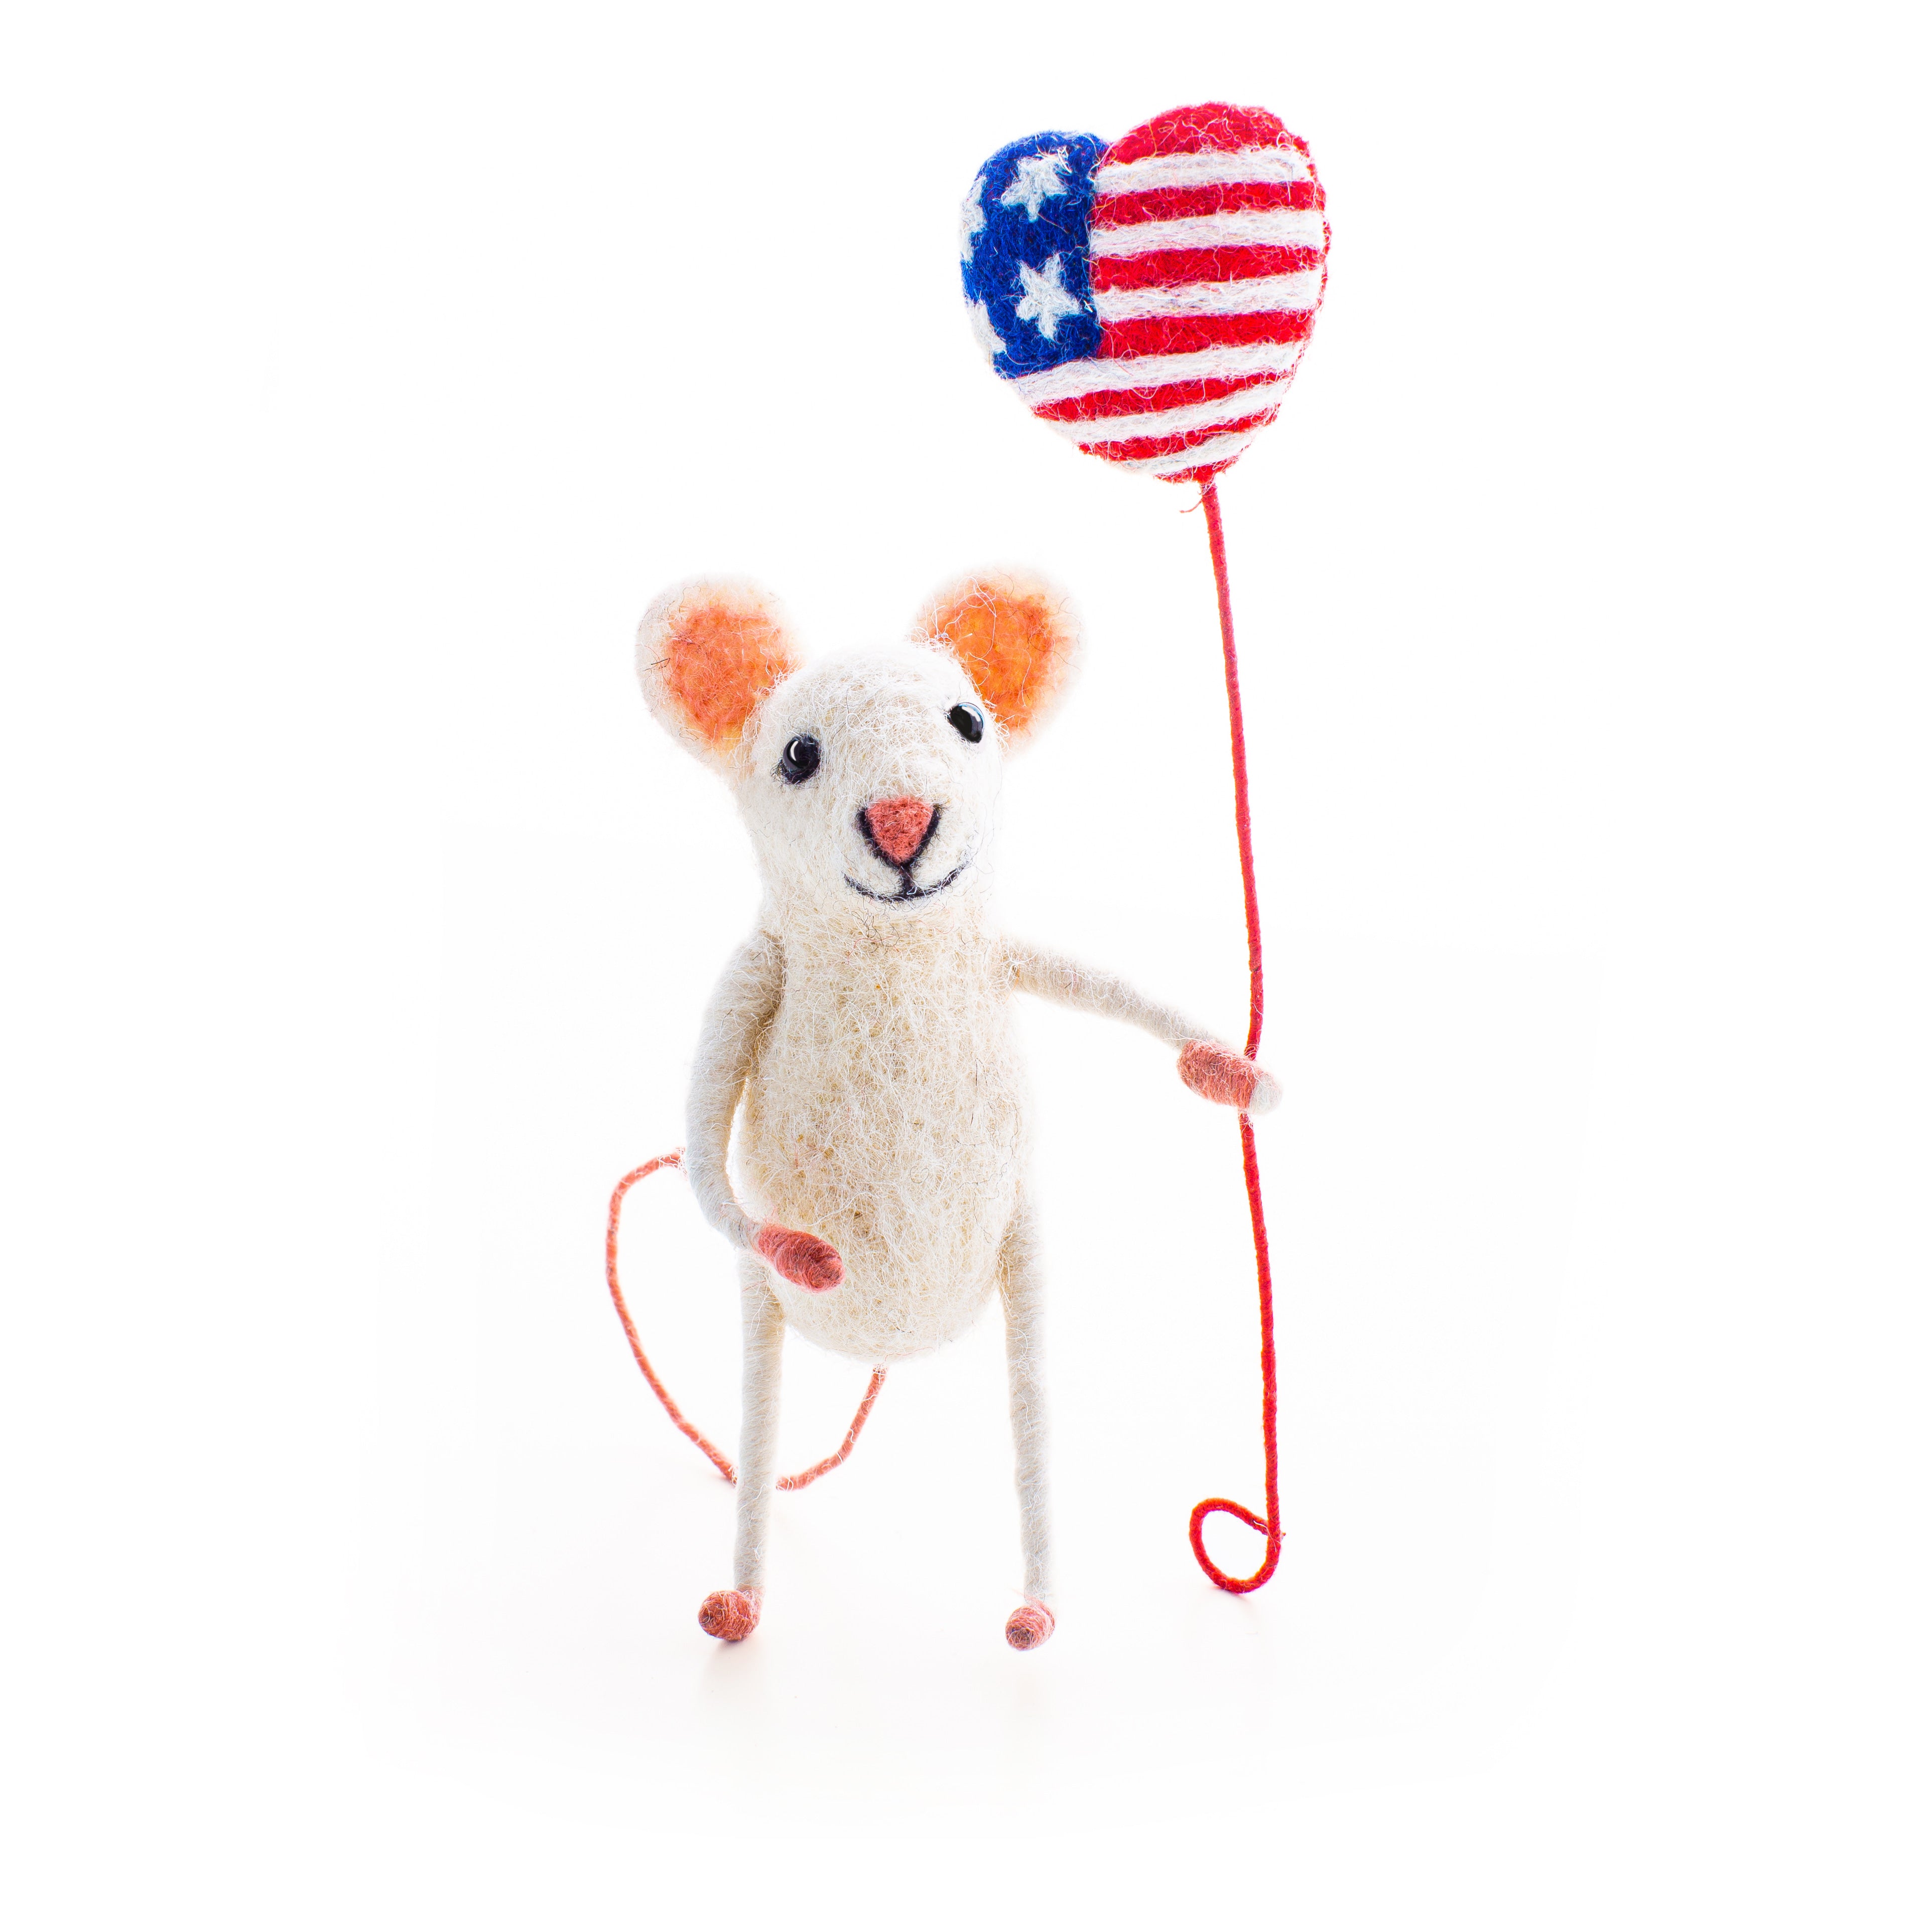 USA Balloon Mouse